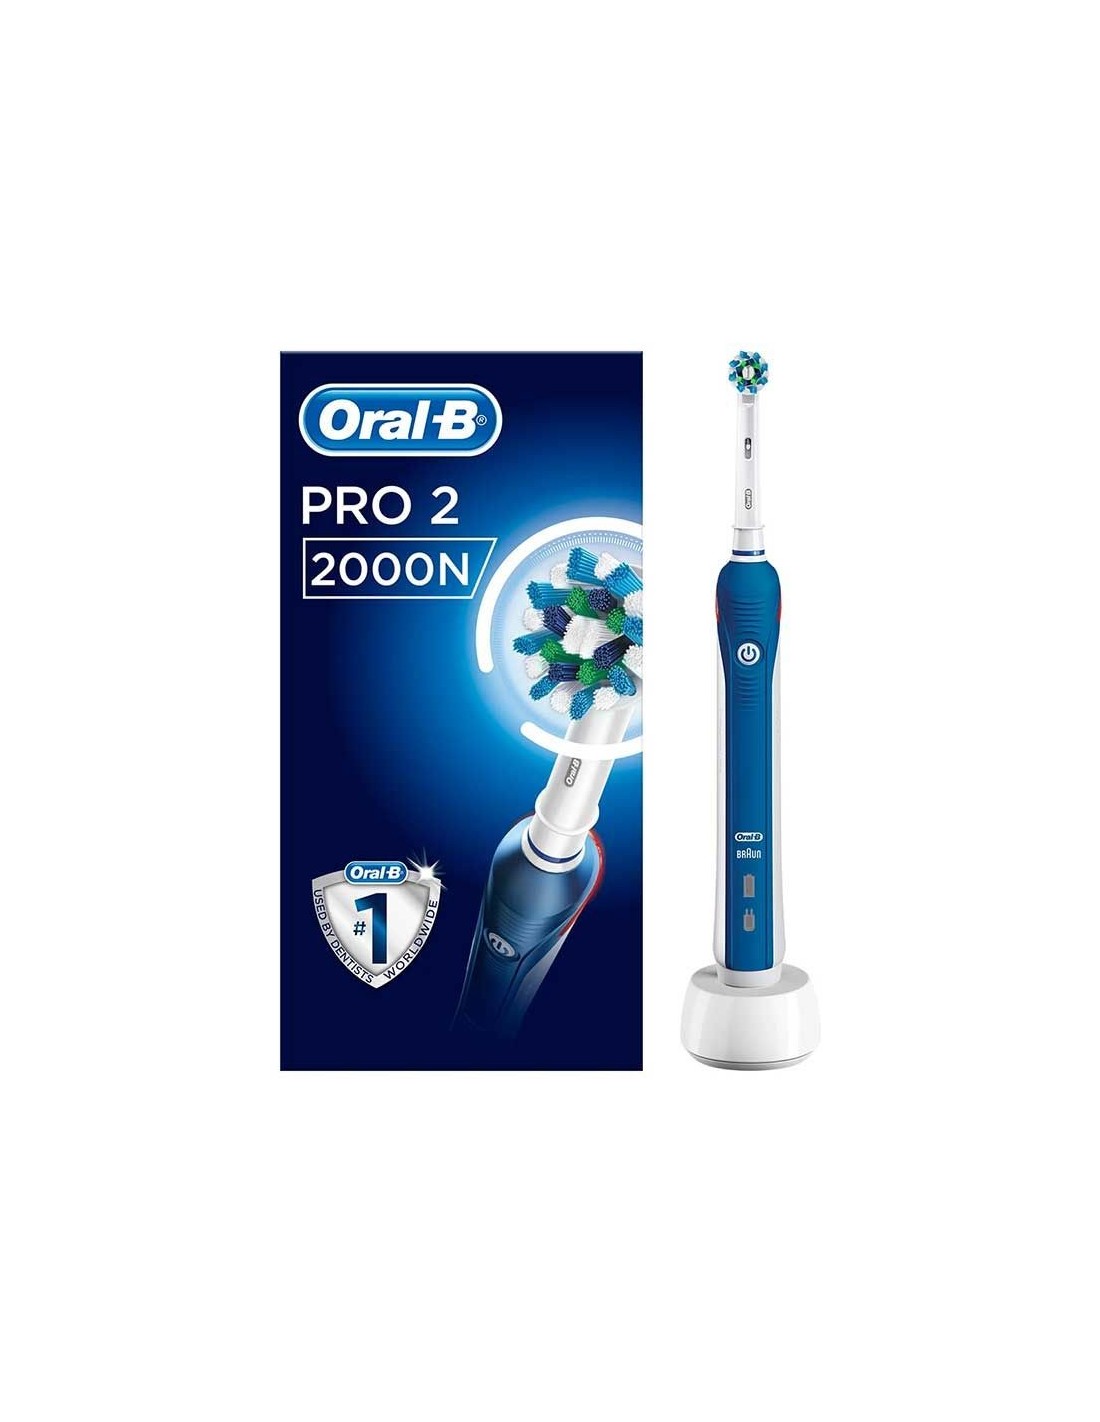 Oral-B Cepillo de dientes Clic, azul Alaska, con 2 cabezales reemplazables  y soporte magnético para cepillos de dientes